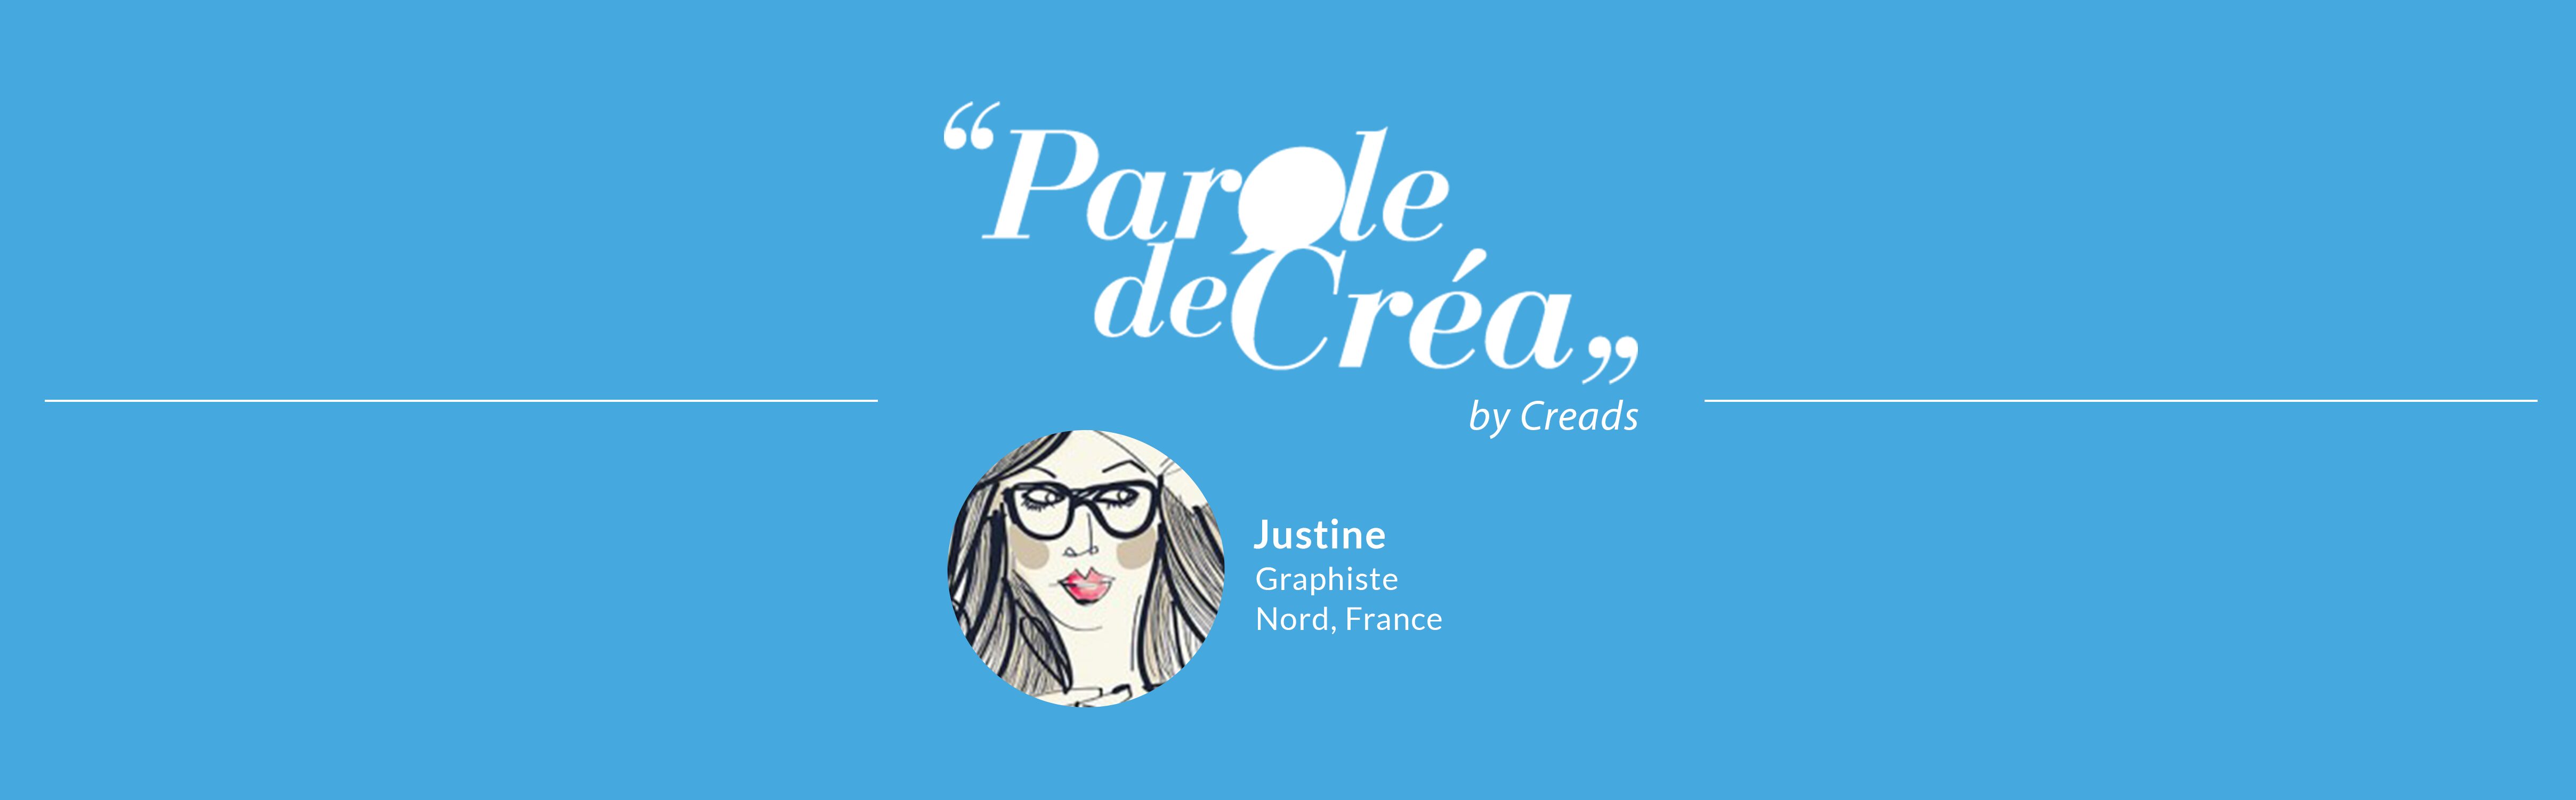 Justine graphiste freelance France